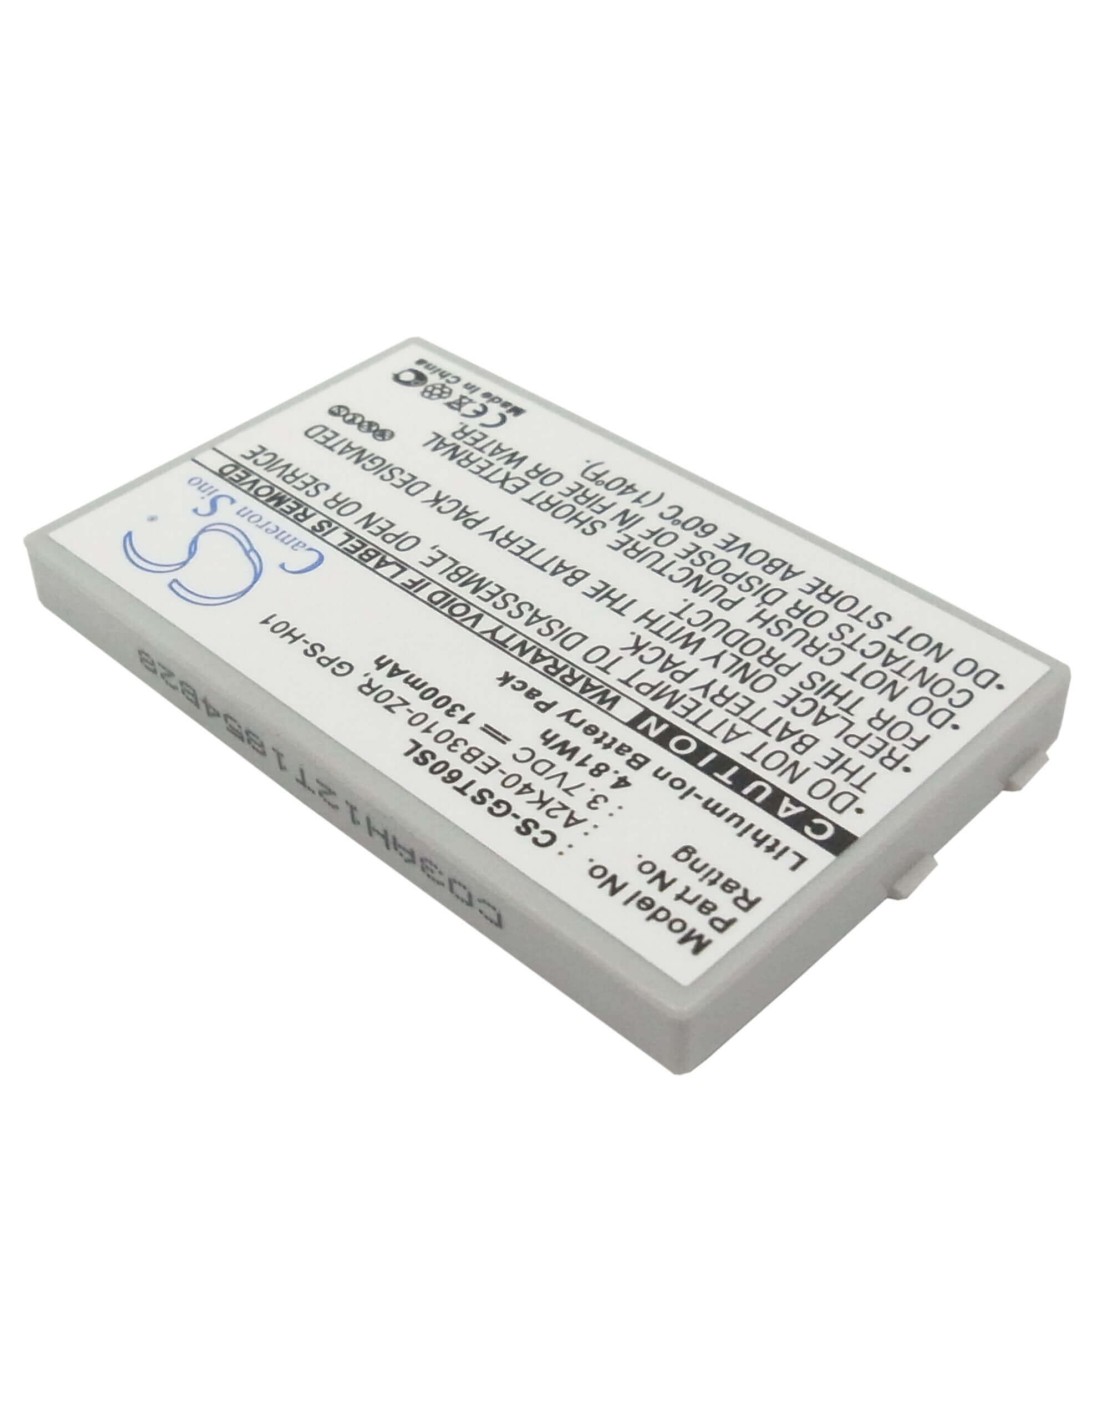 Battery for Gigabyte gSmart t600, gSmart MW998 3.7V, 1300mAh - 4.81Wh